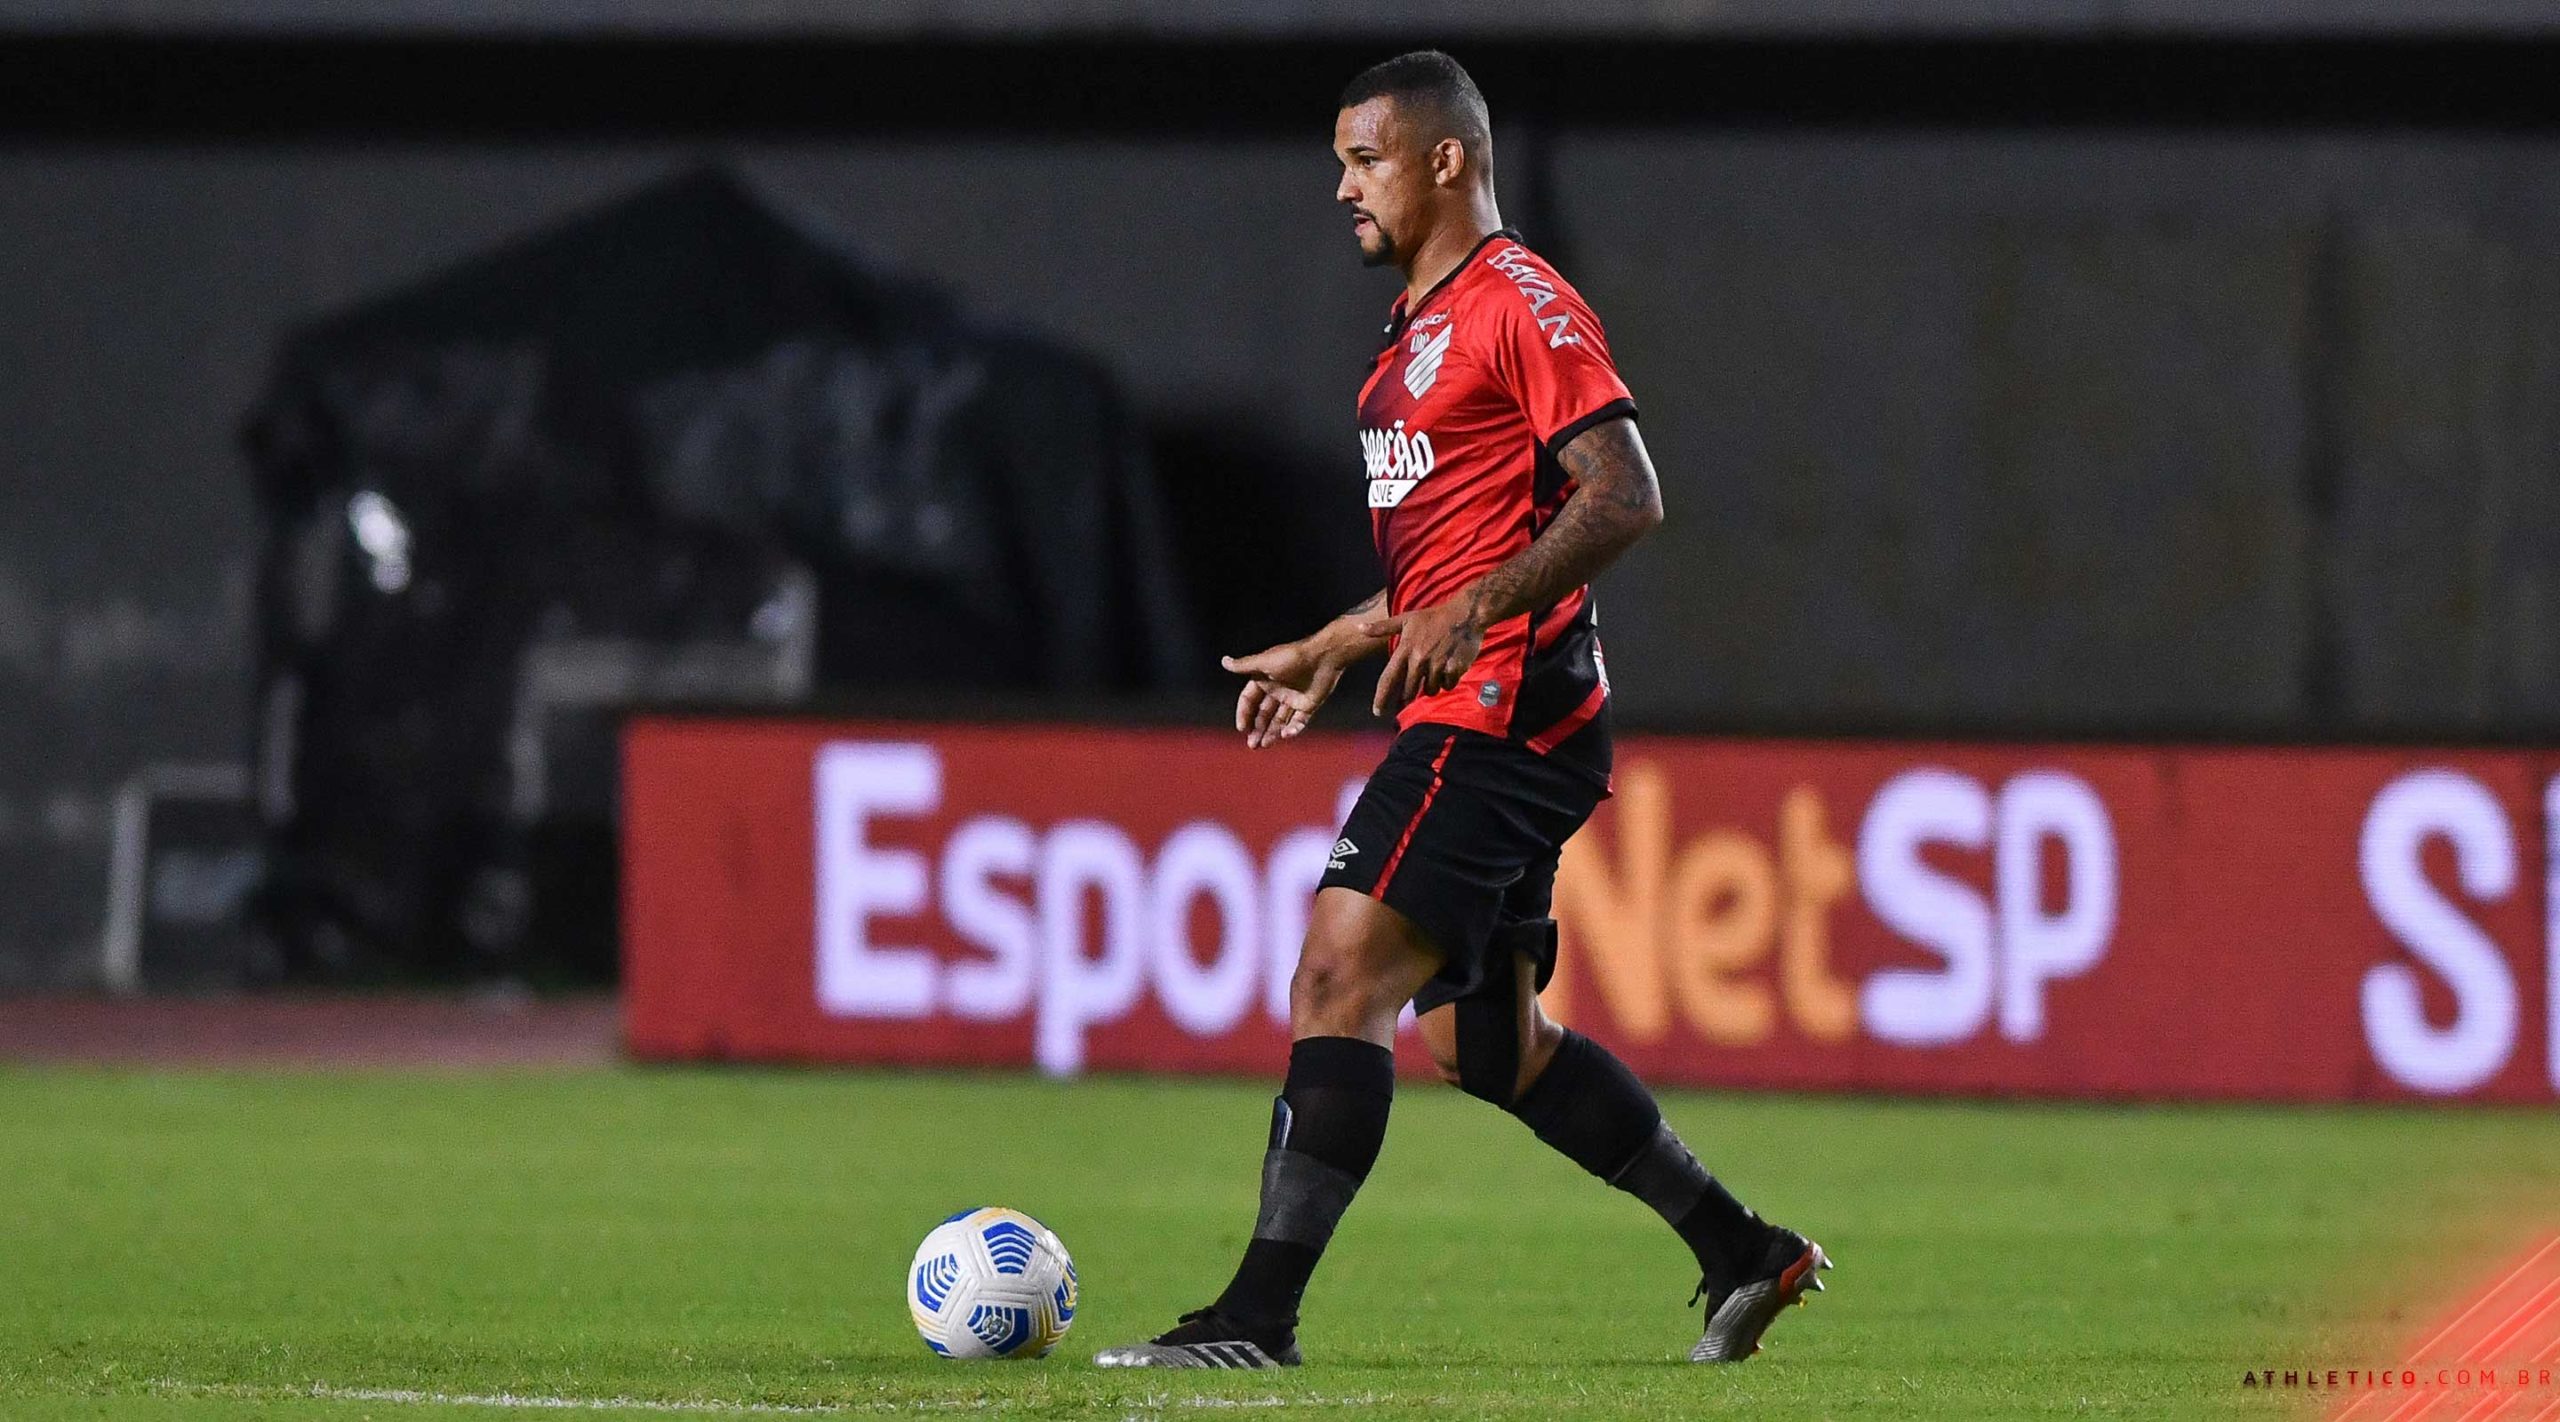 Jogador brasileiro que atua no futebol israelense chega a Portugal:  'Aliviado', Sorocaba e Jundiaí